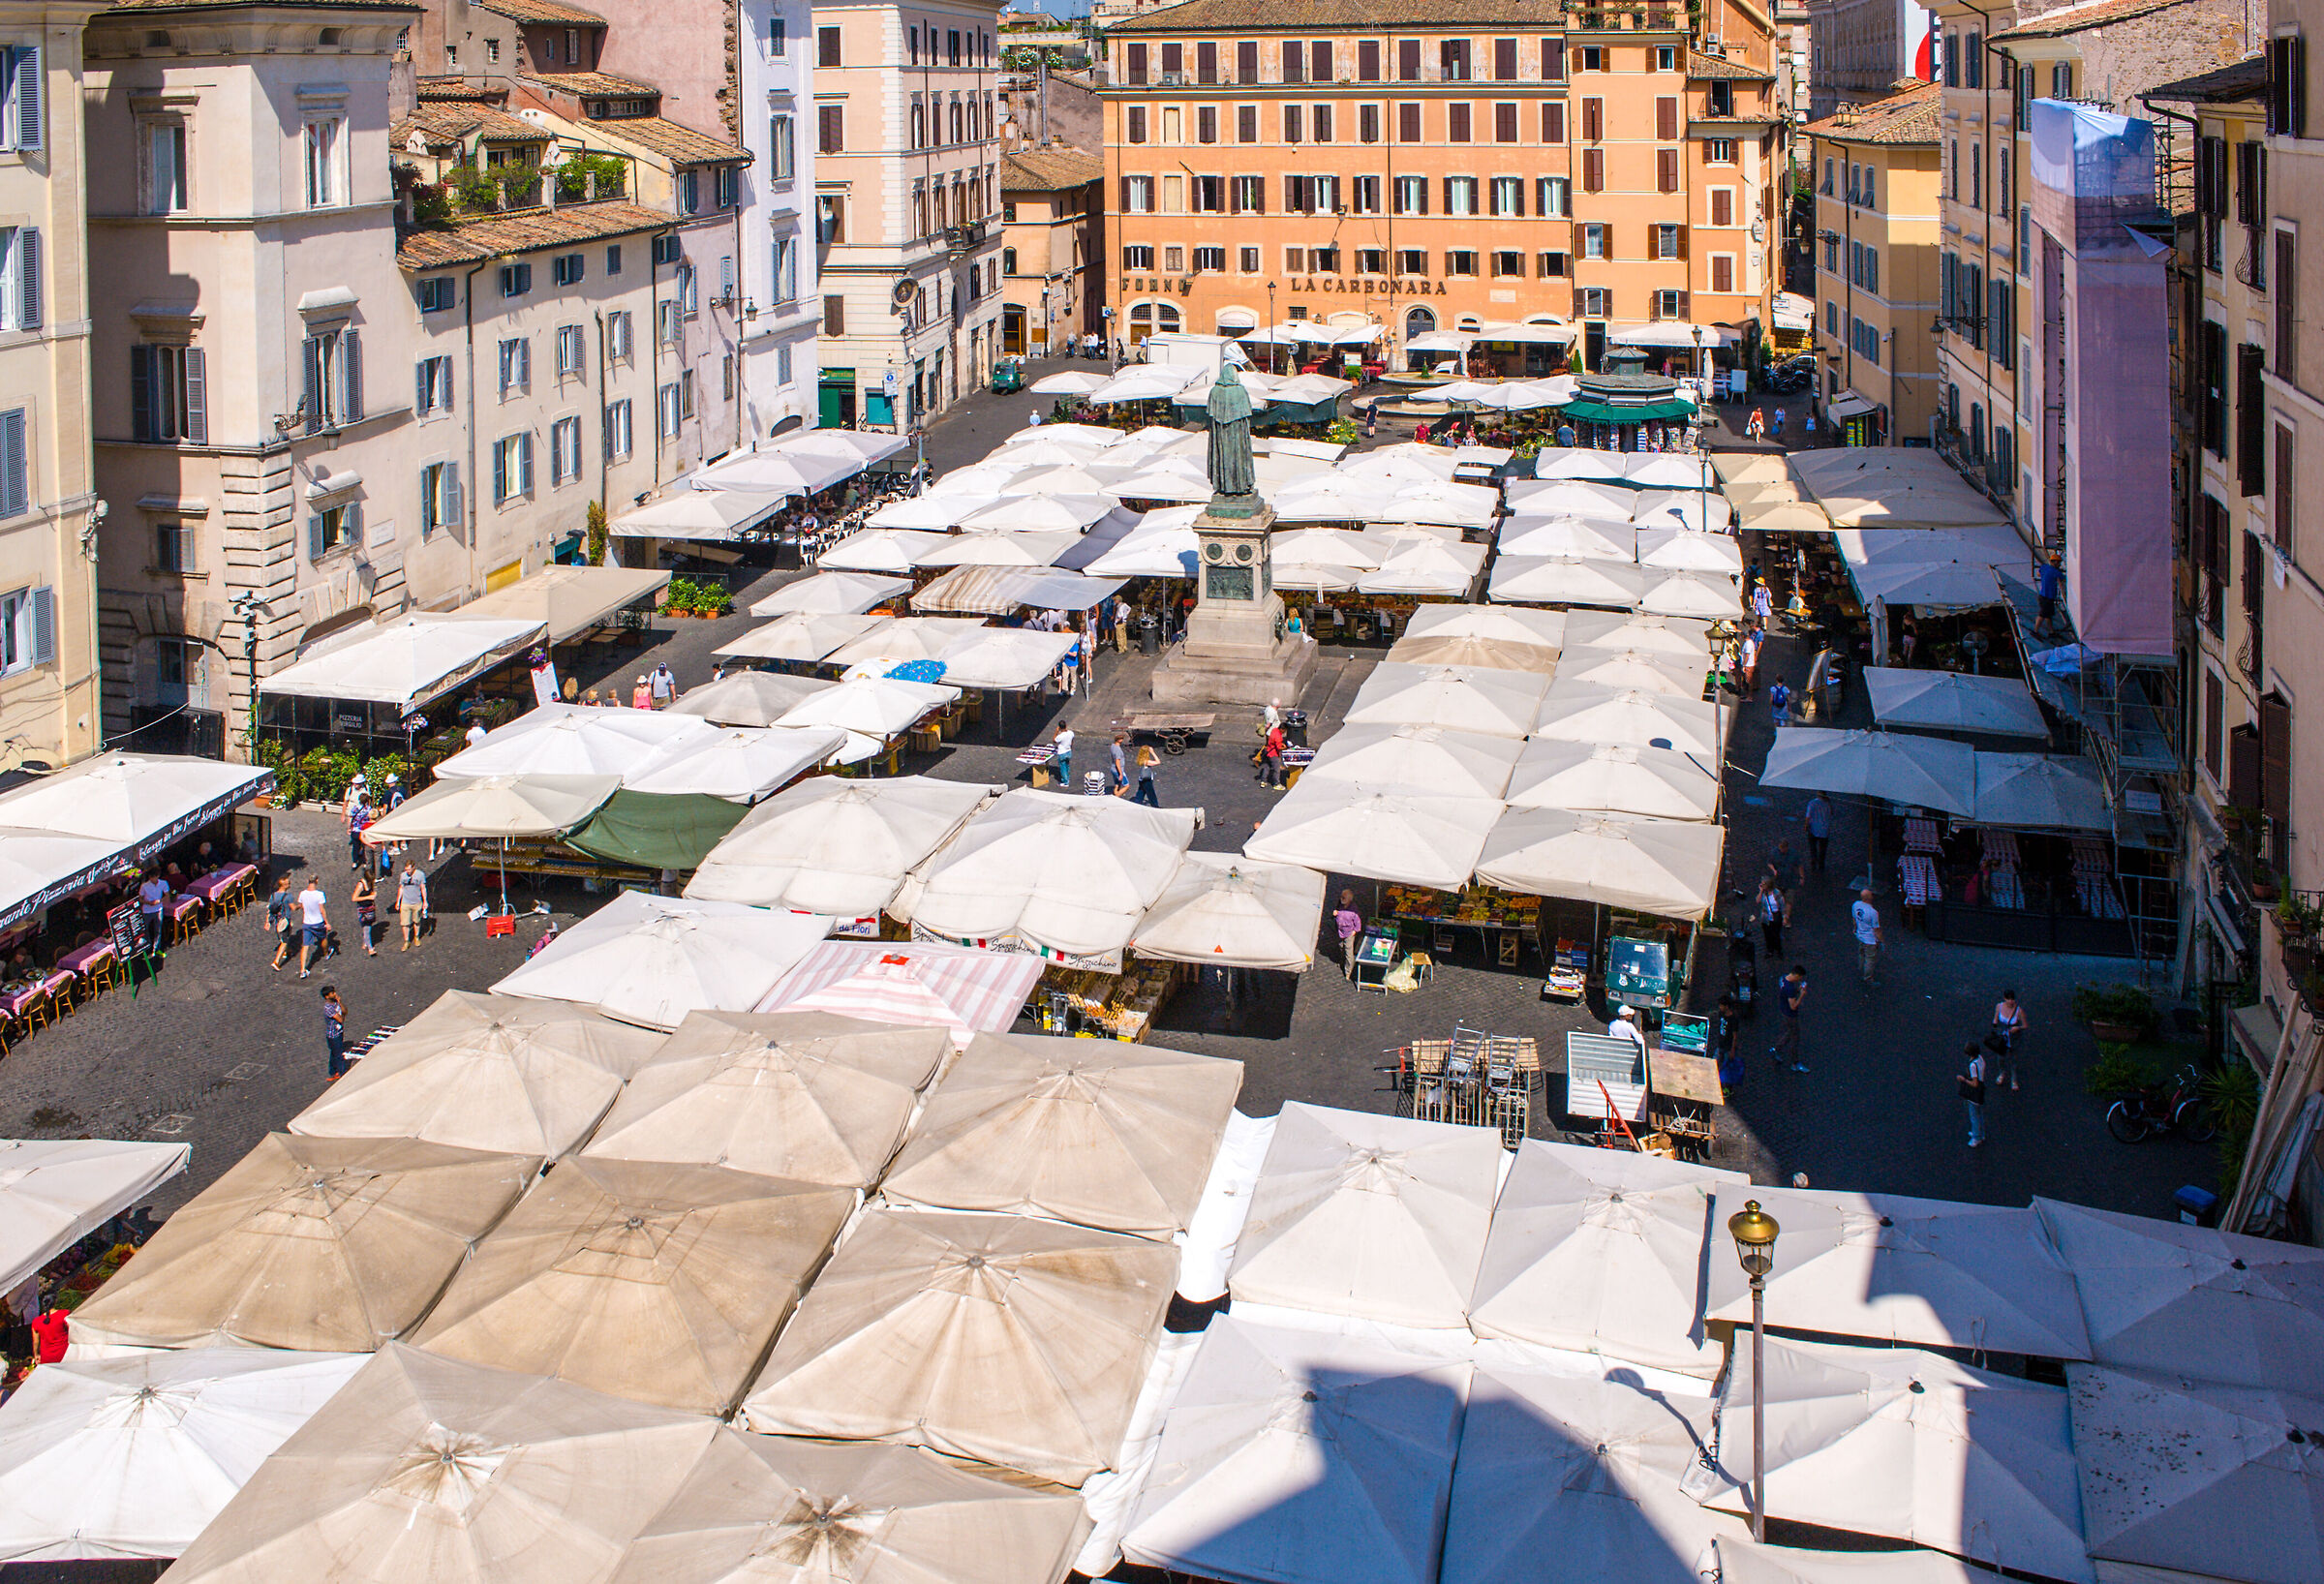 Rome-The campo dè fiori market...